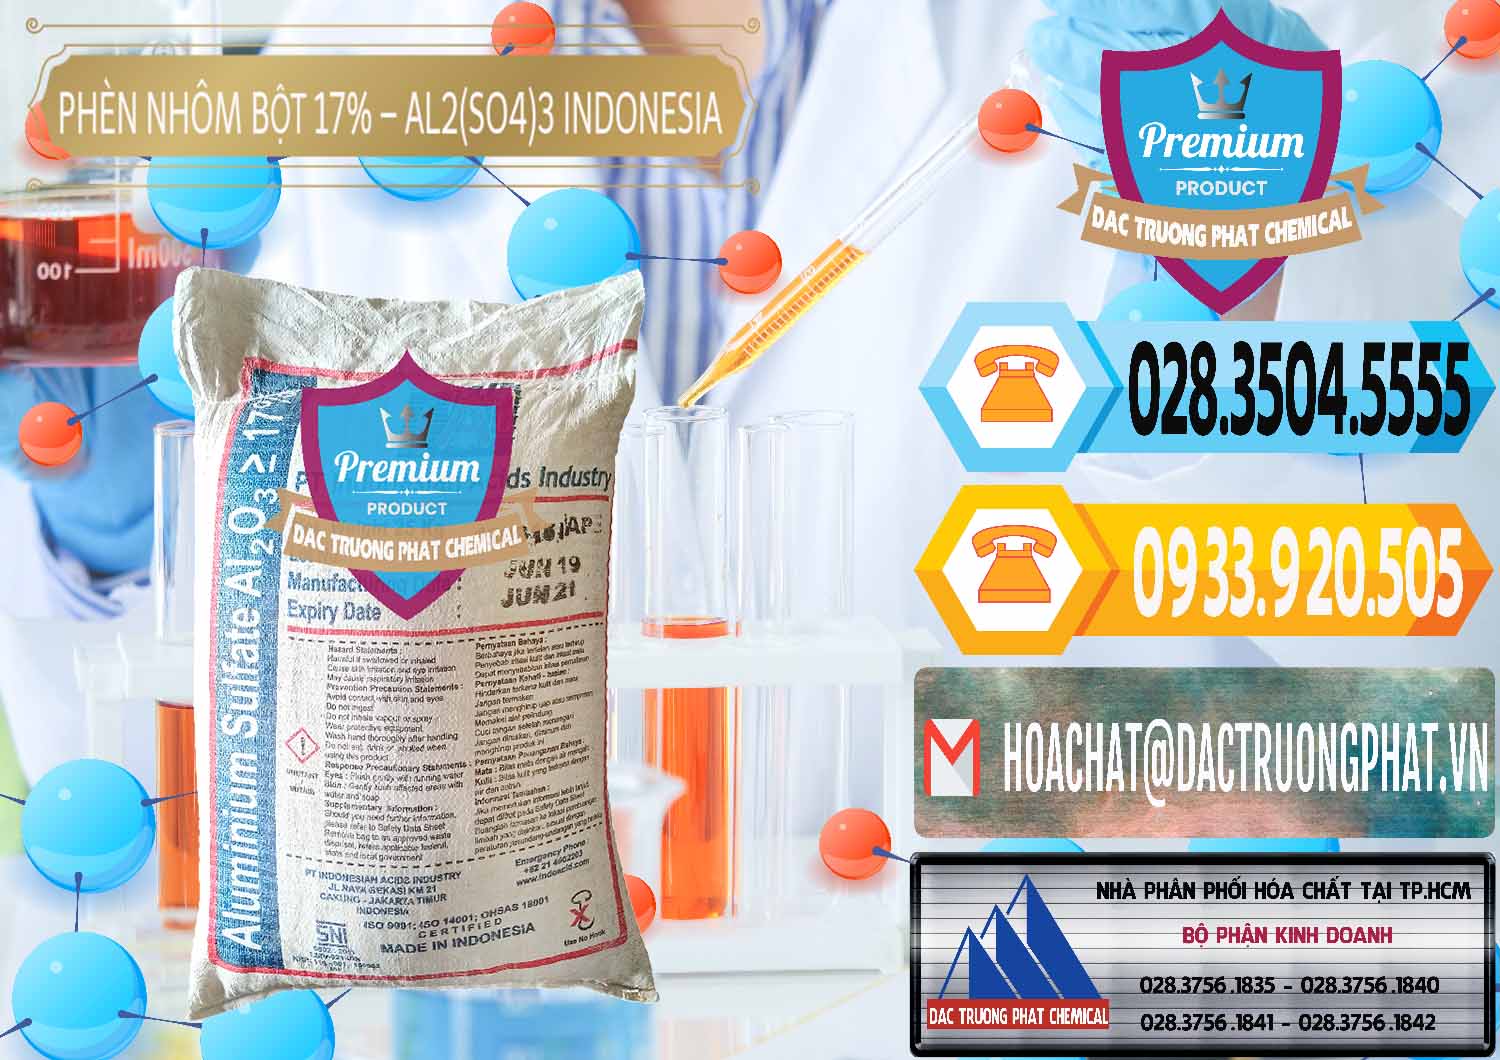 Đơn vị chuyên nhập khẩu và bán Phèn Nhôm Bột - Al2(SO4)3 17% bao 25kg Indonesia - 0114 - Công ty chuyên nhập khẩu ( cung cấp ) hóa chất tại TP.HCM - hoachattayrua.net